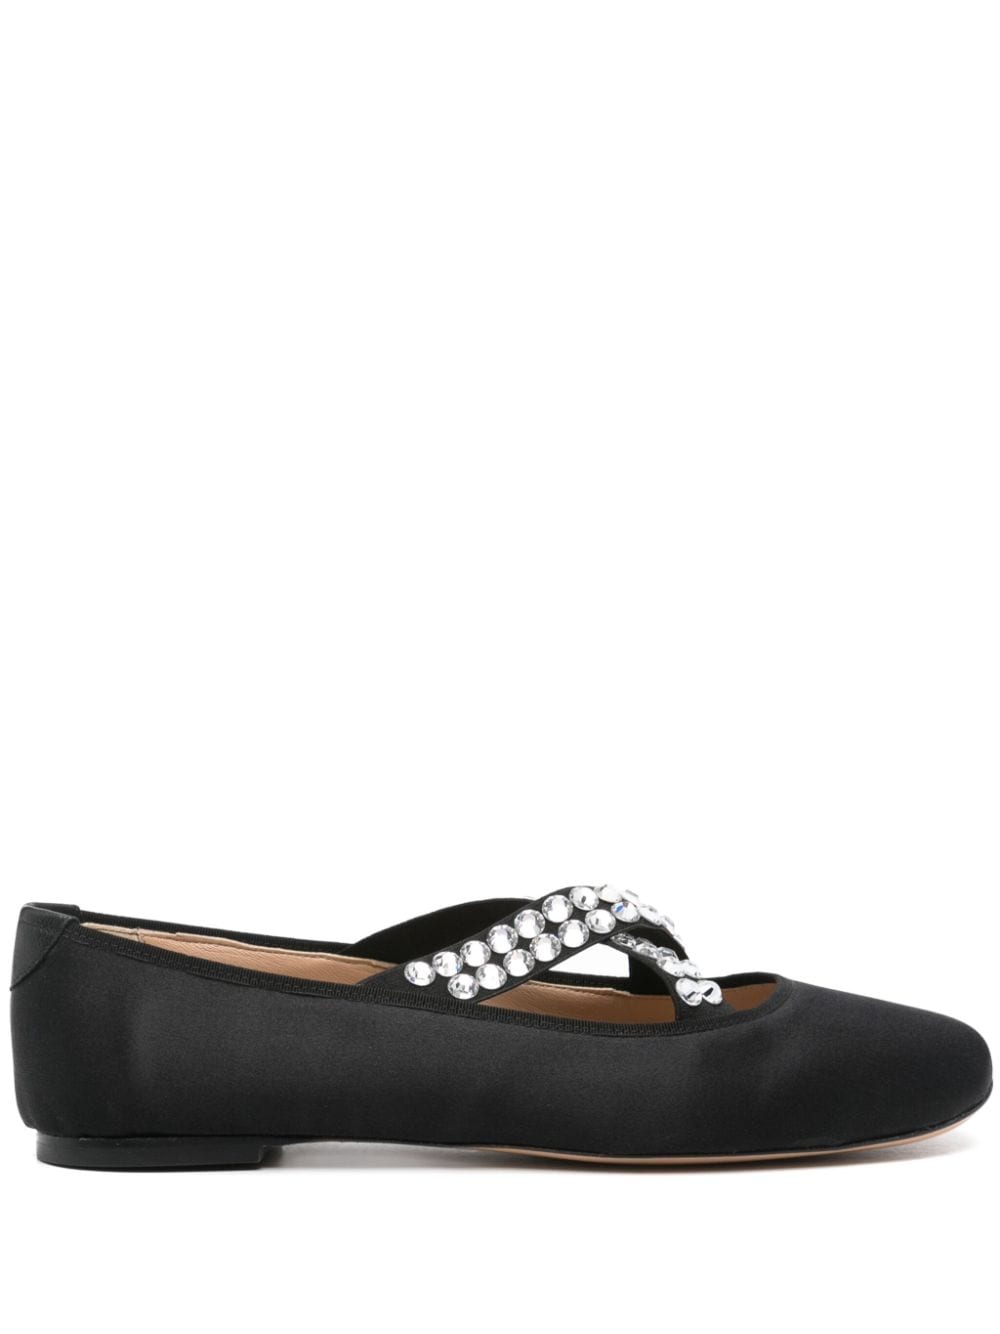 Casadei satin gem-embellished ballerina shoes - Black von Casadei